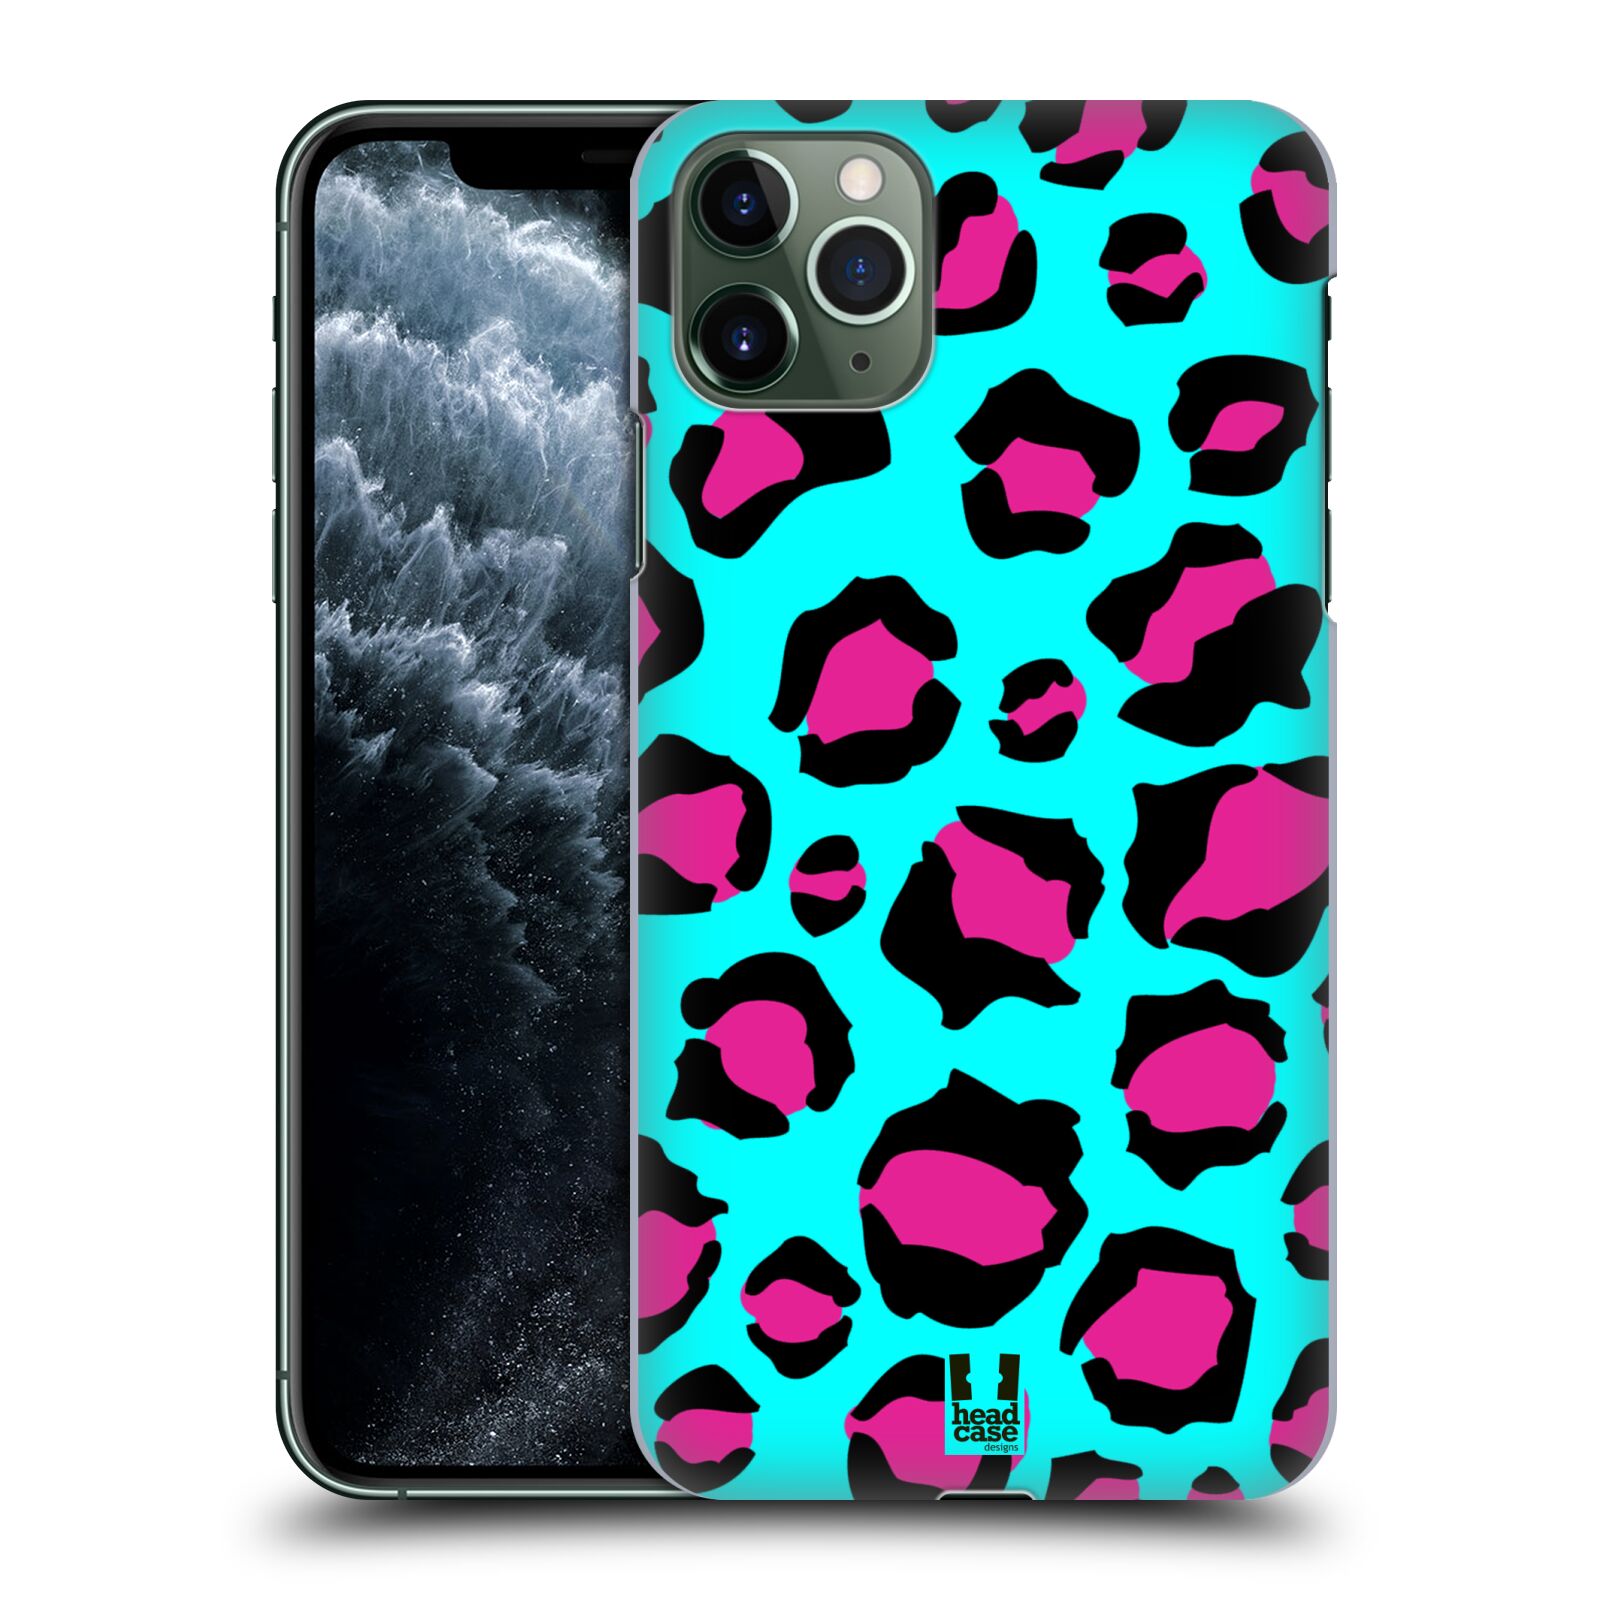 Pouzdro na mobil Apple Iphone 11 PRO MAX - HEAD CASE - vzor Divočina zvíře tyrkysový leopard